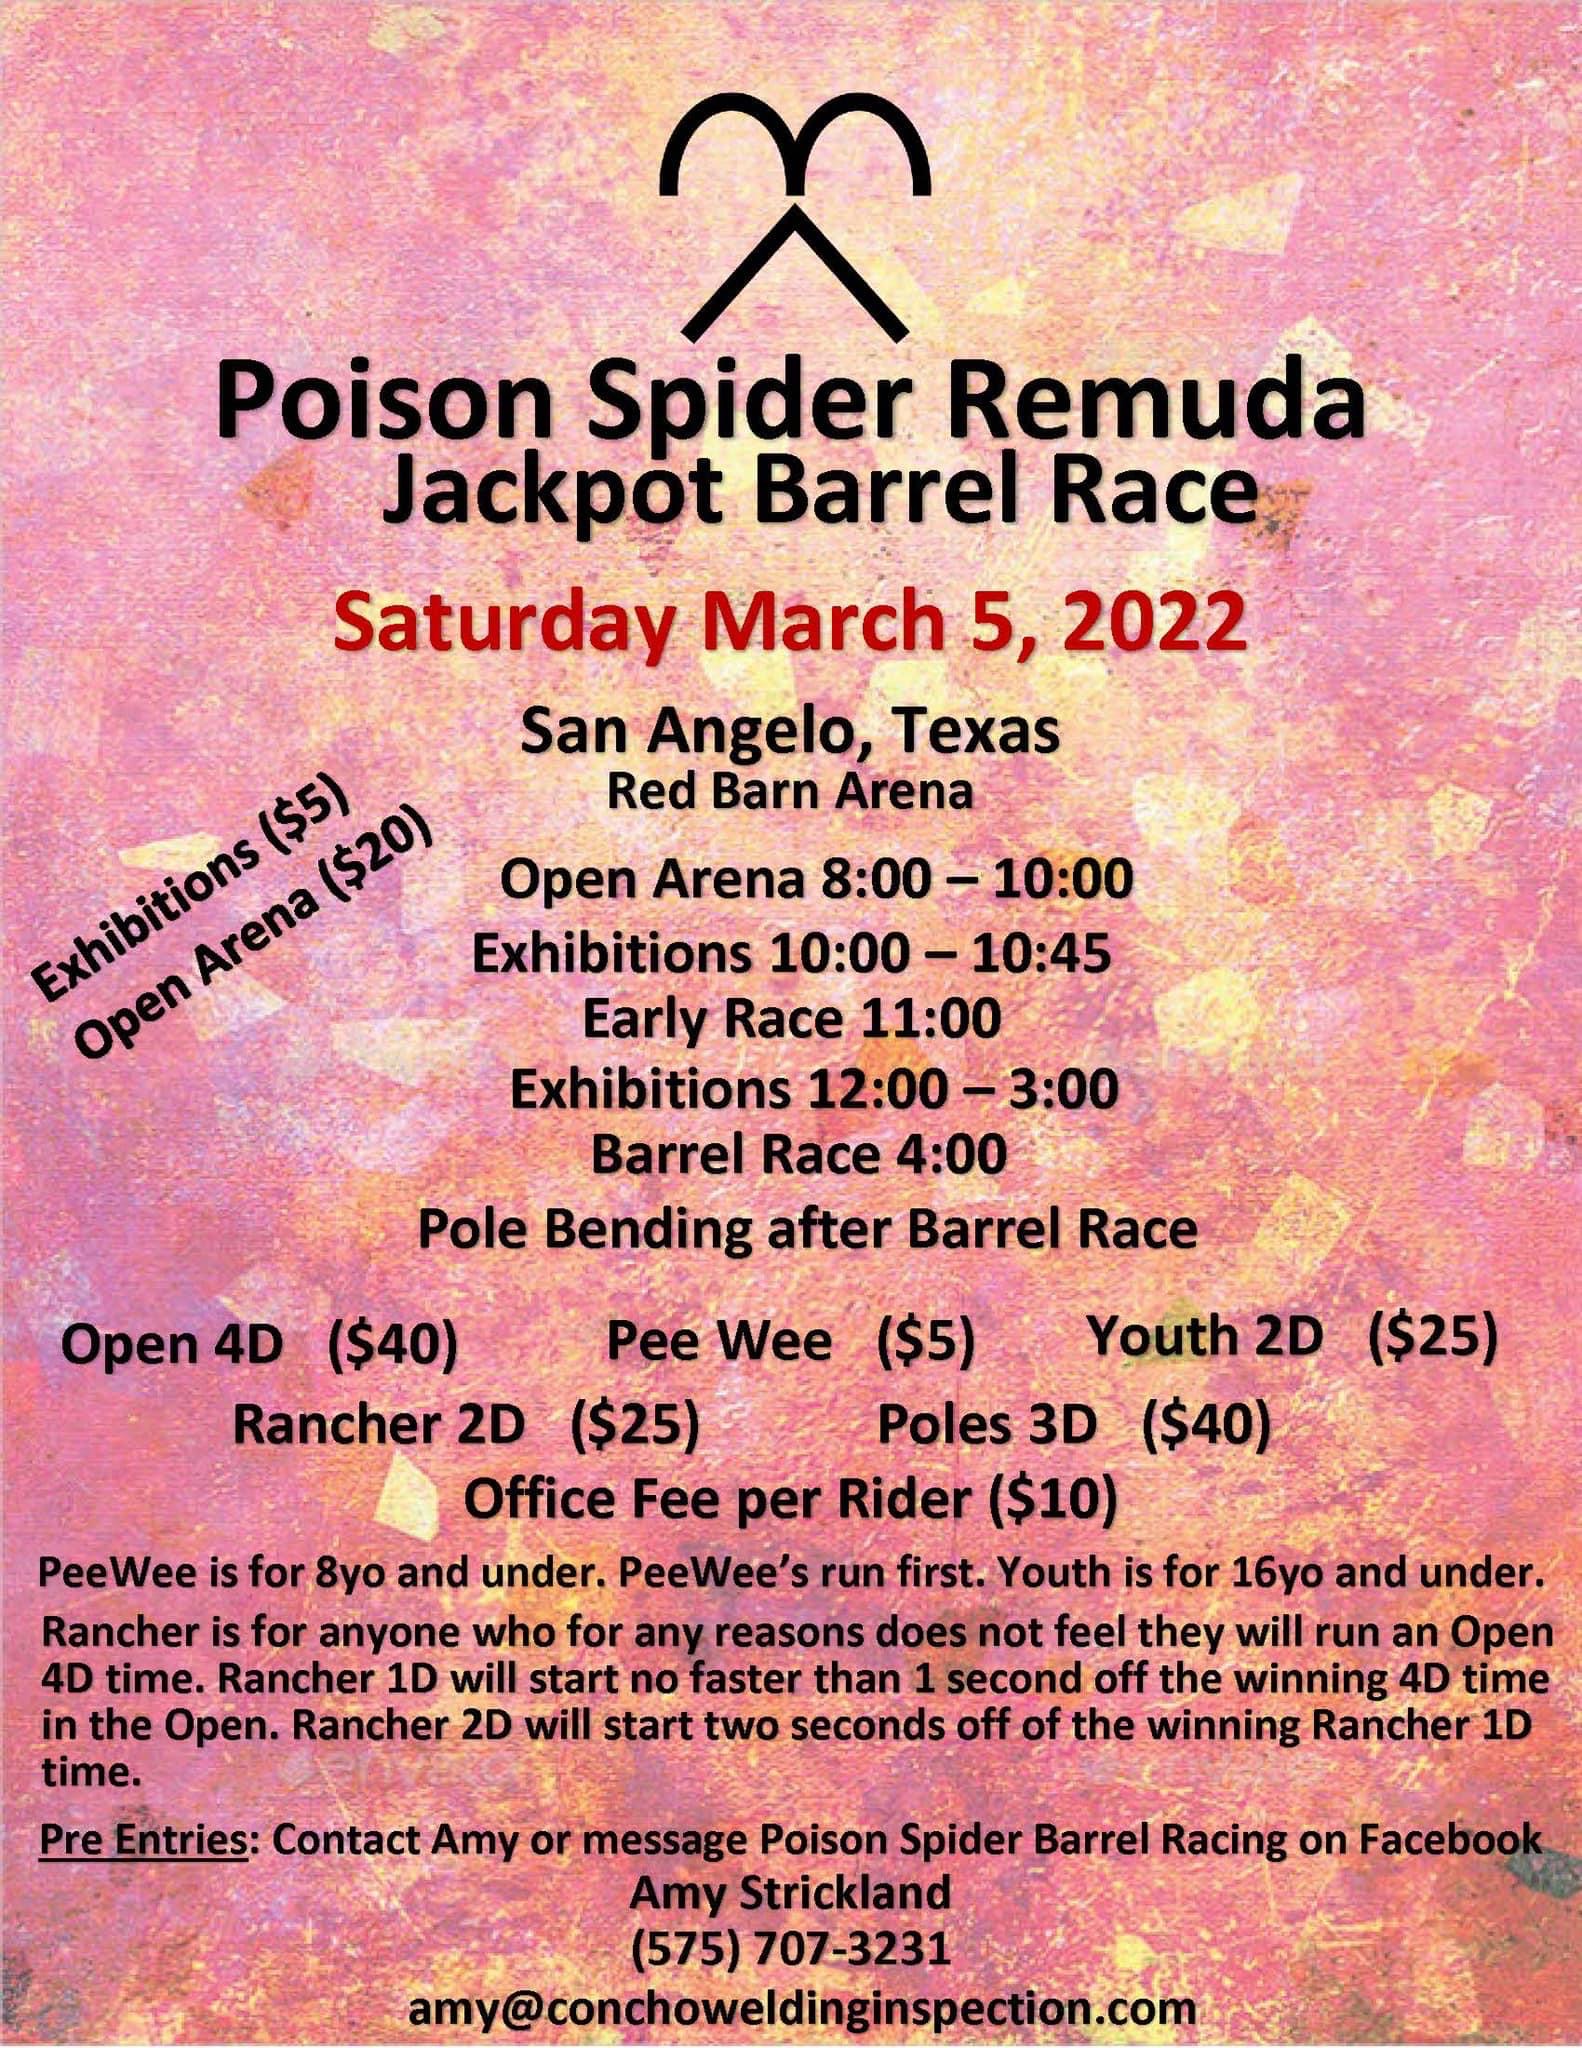 Poison Spider Remuda Barrel Race